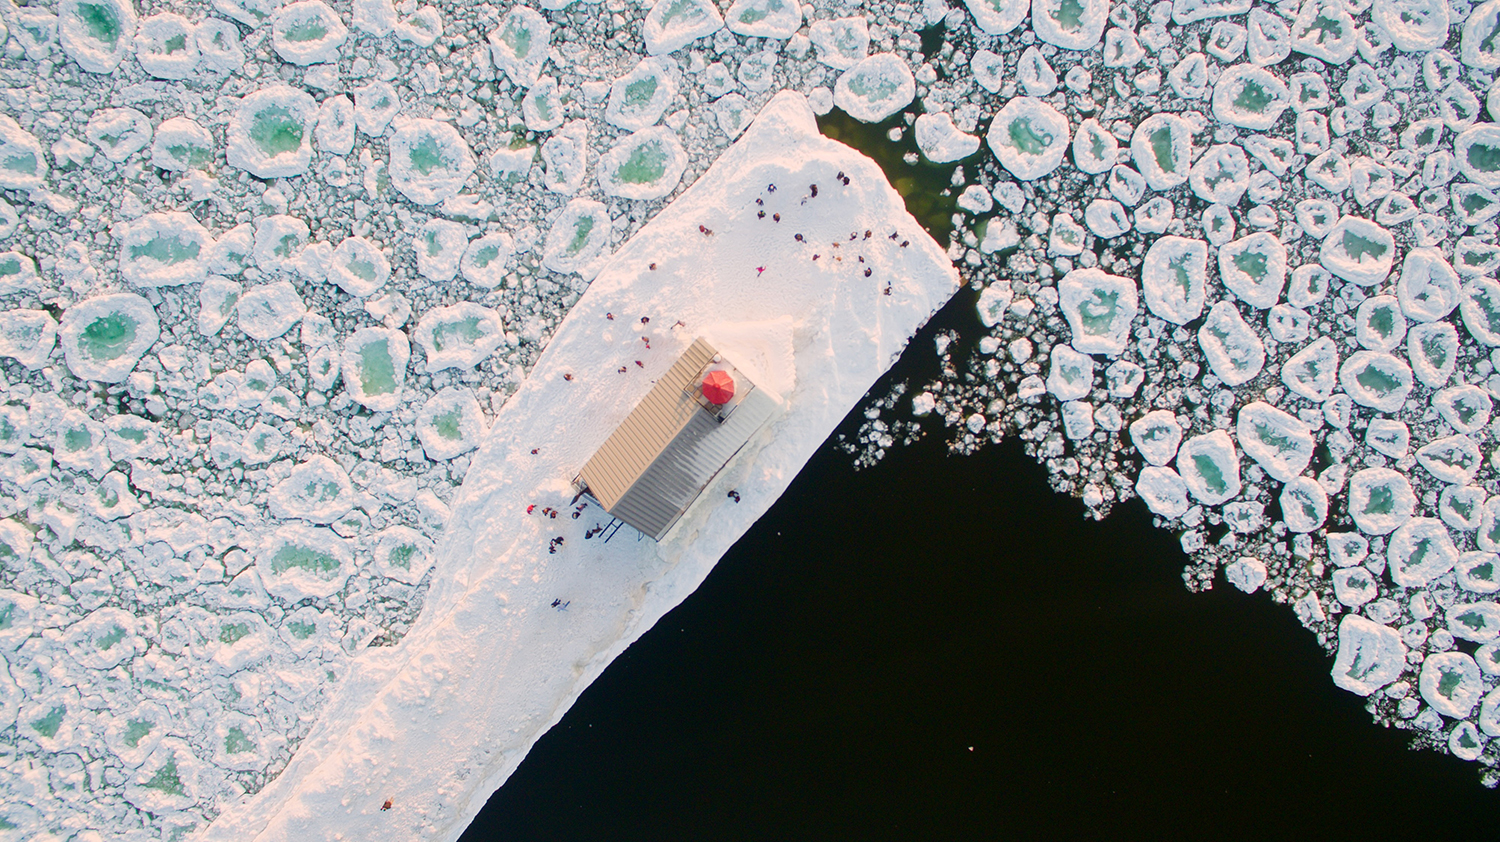 Op Lake Michigan, nabij Chicago, vormen zich 'ice pancakes' een weerfenomeen waarbij water bevriest in ronde pannenkoeken